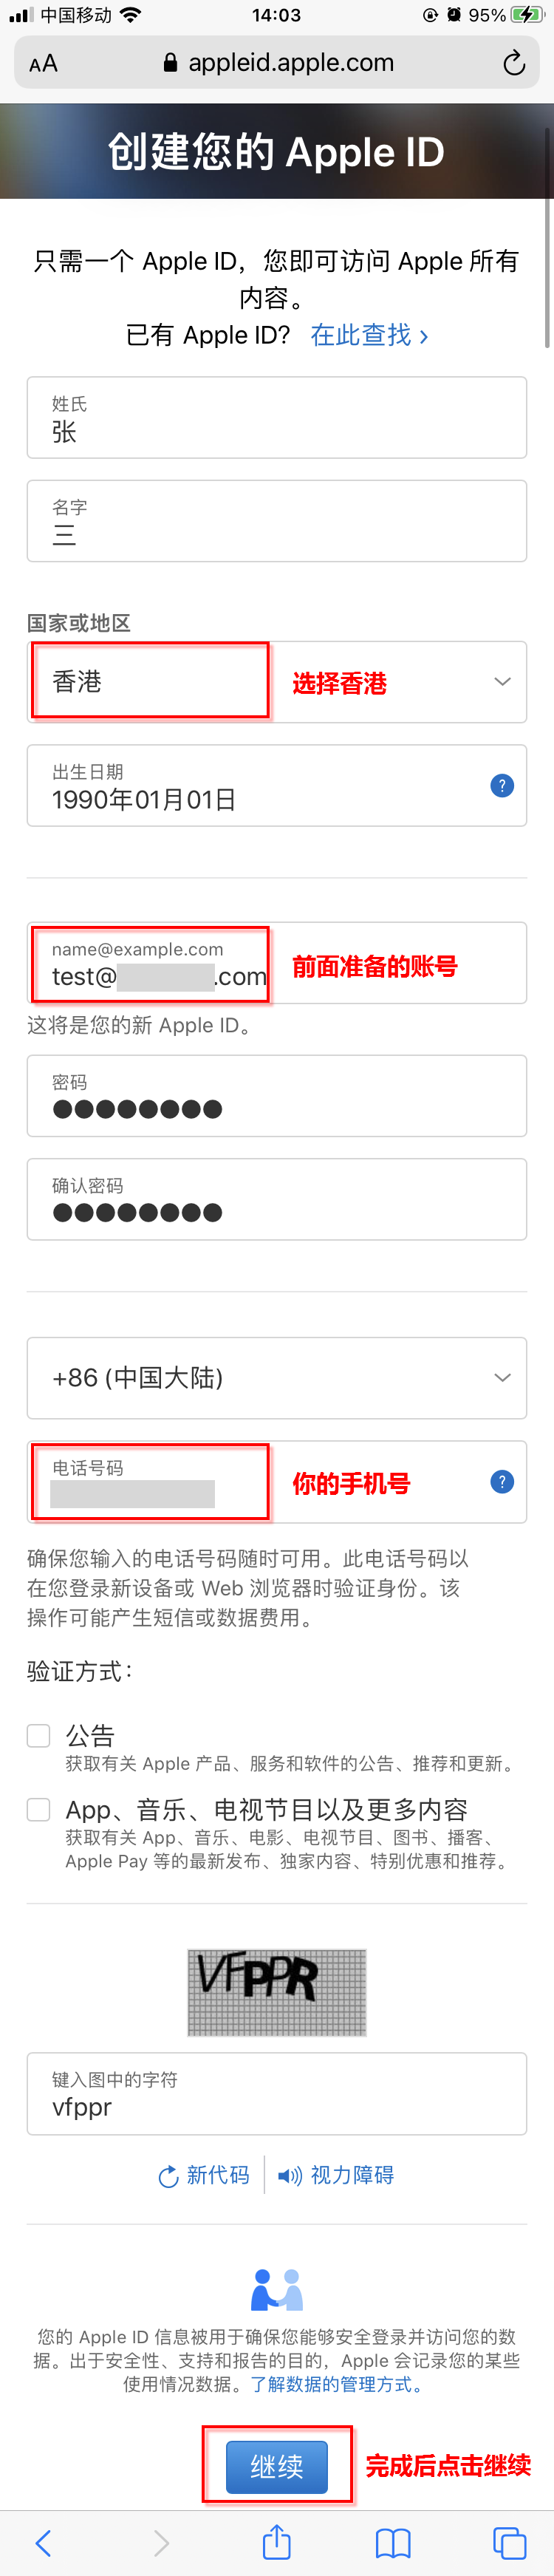 qq号码可以注册微信吗_香港号码打大陆手机要加什么_大陆手机号码可以注册日区苹果